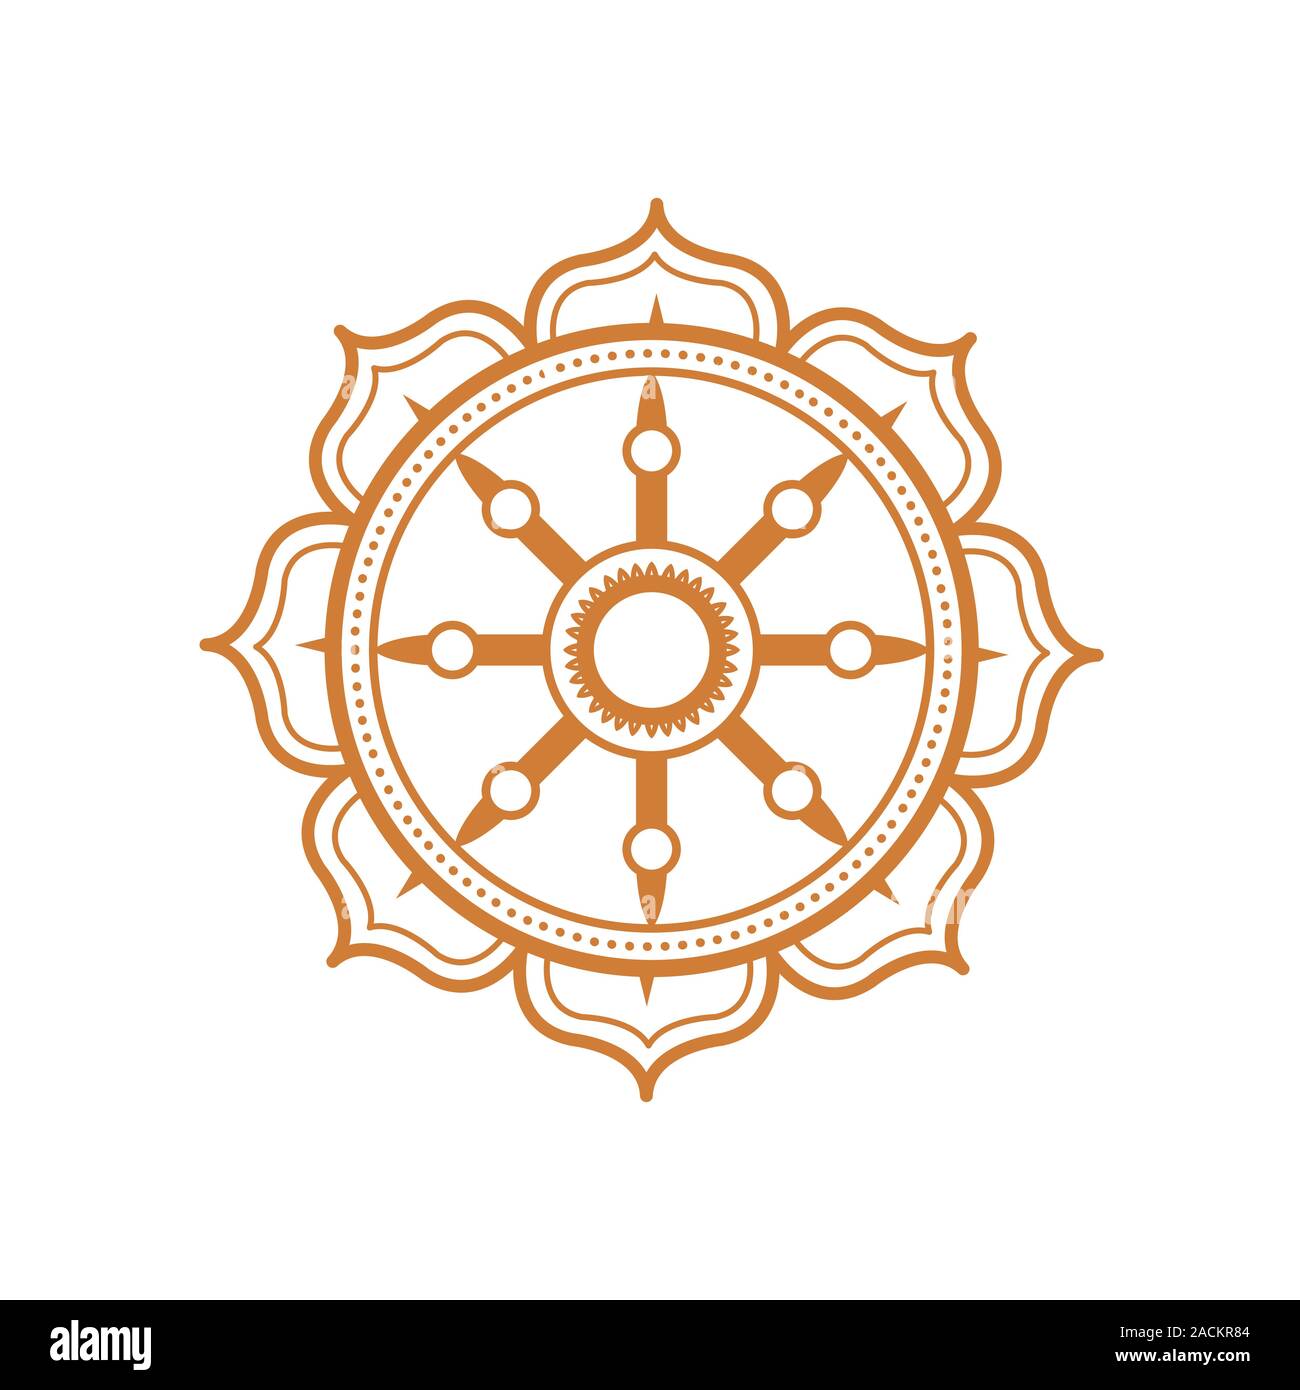 Dharma wheel vector logo Stock Vector